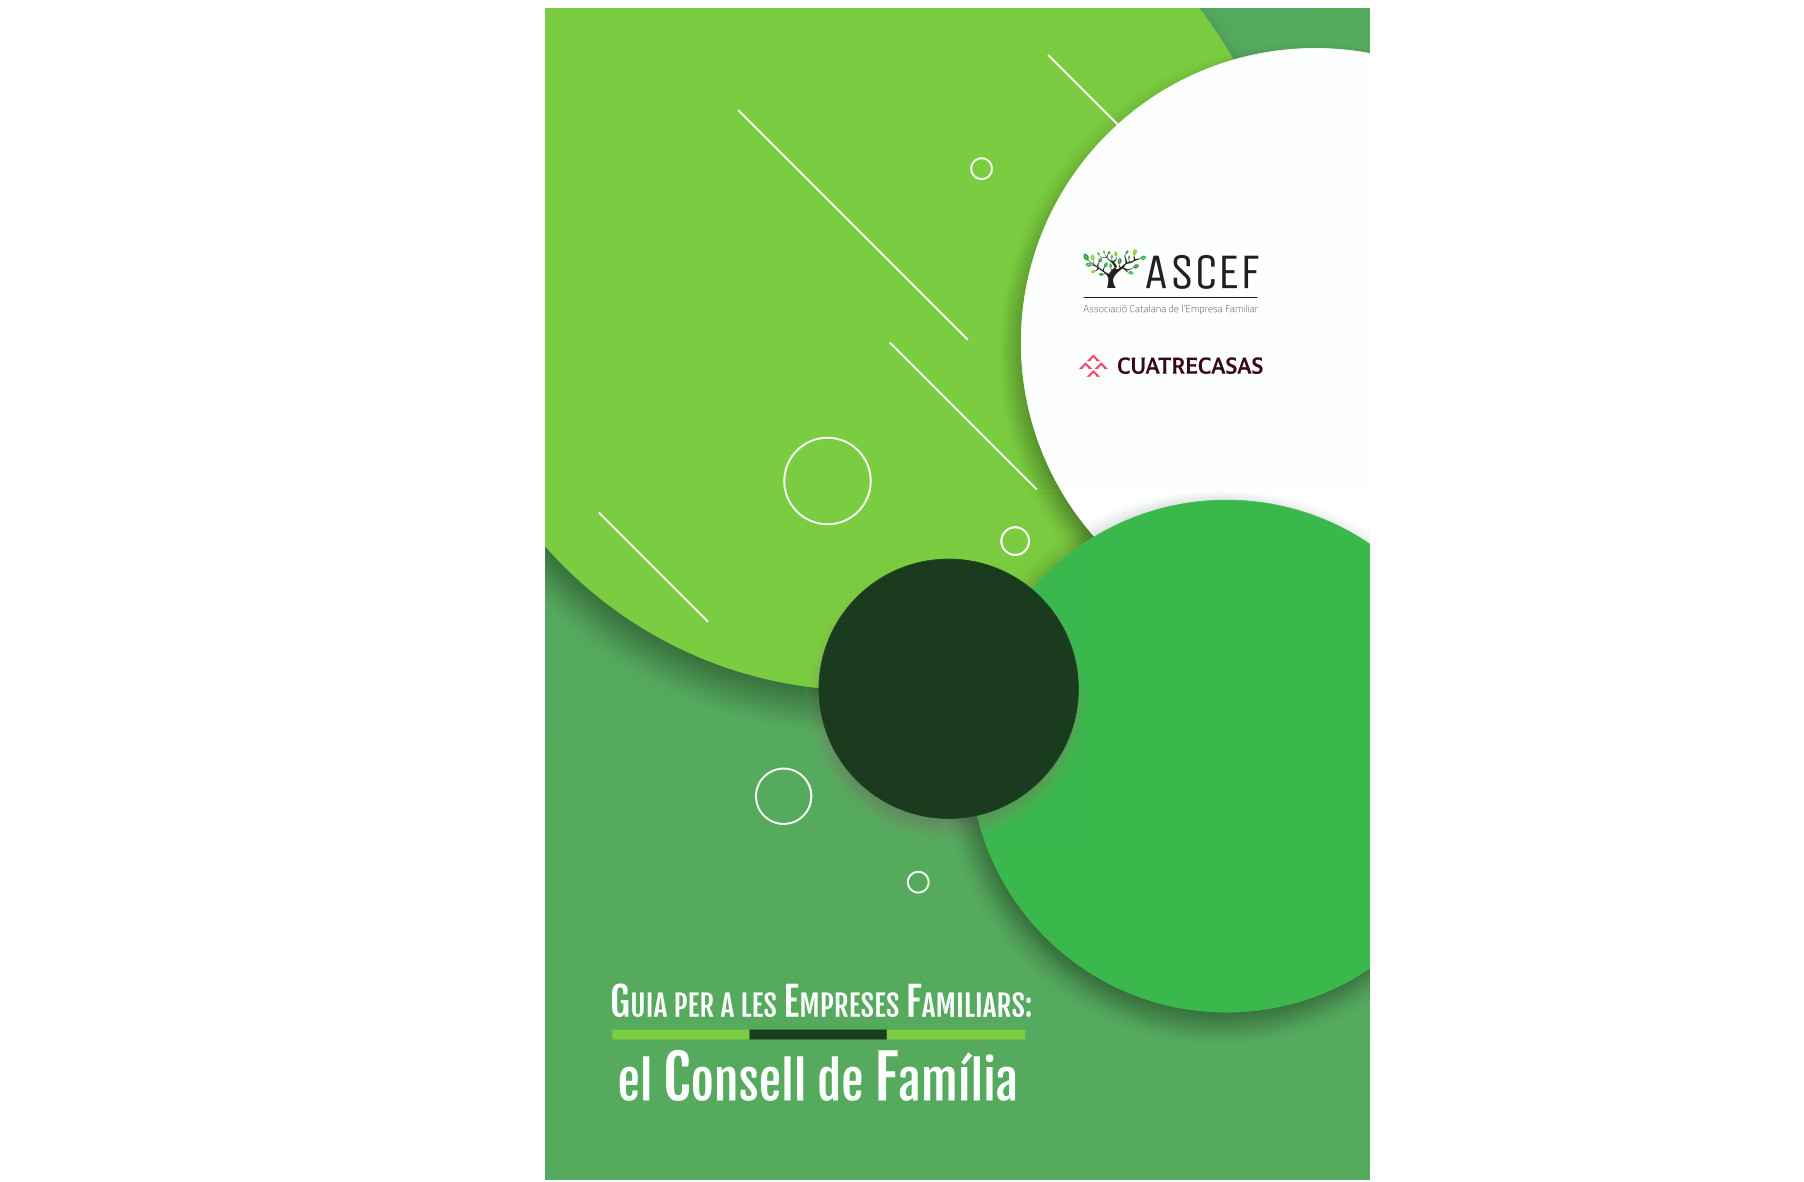 L’ASCEF crea una guia per impulsar la constitució dels Consells de Família que ara només tenen 3 de cada 10 empreses